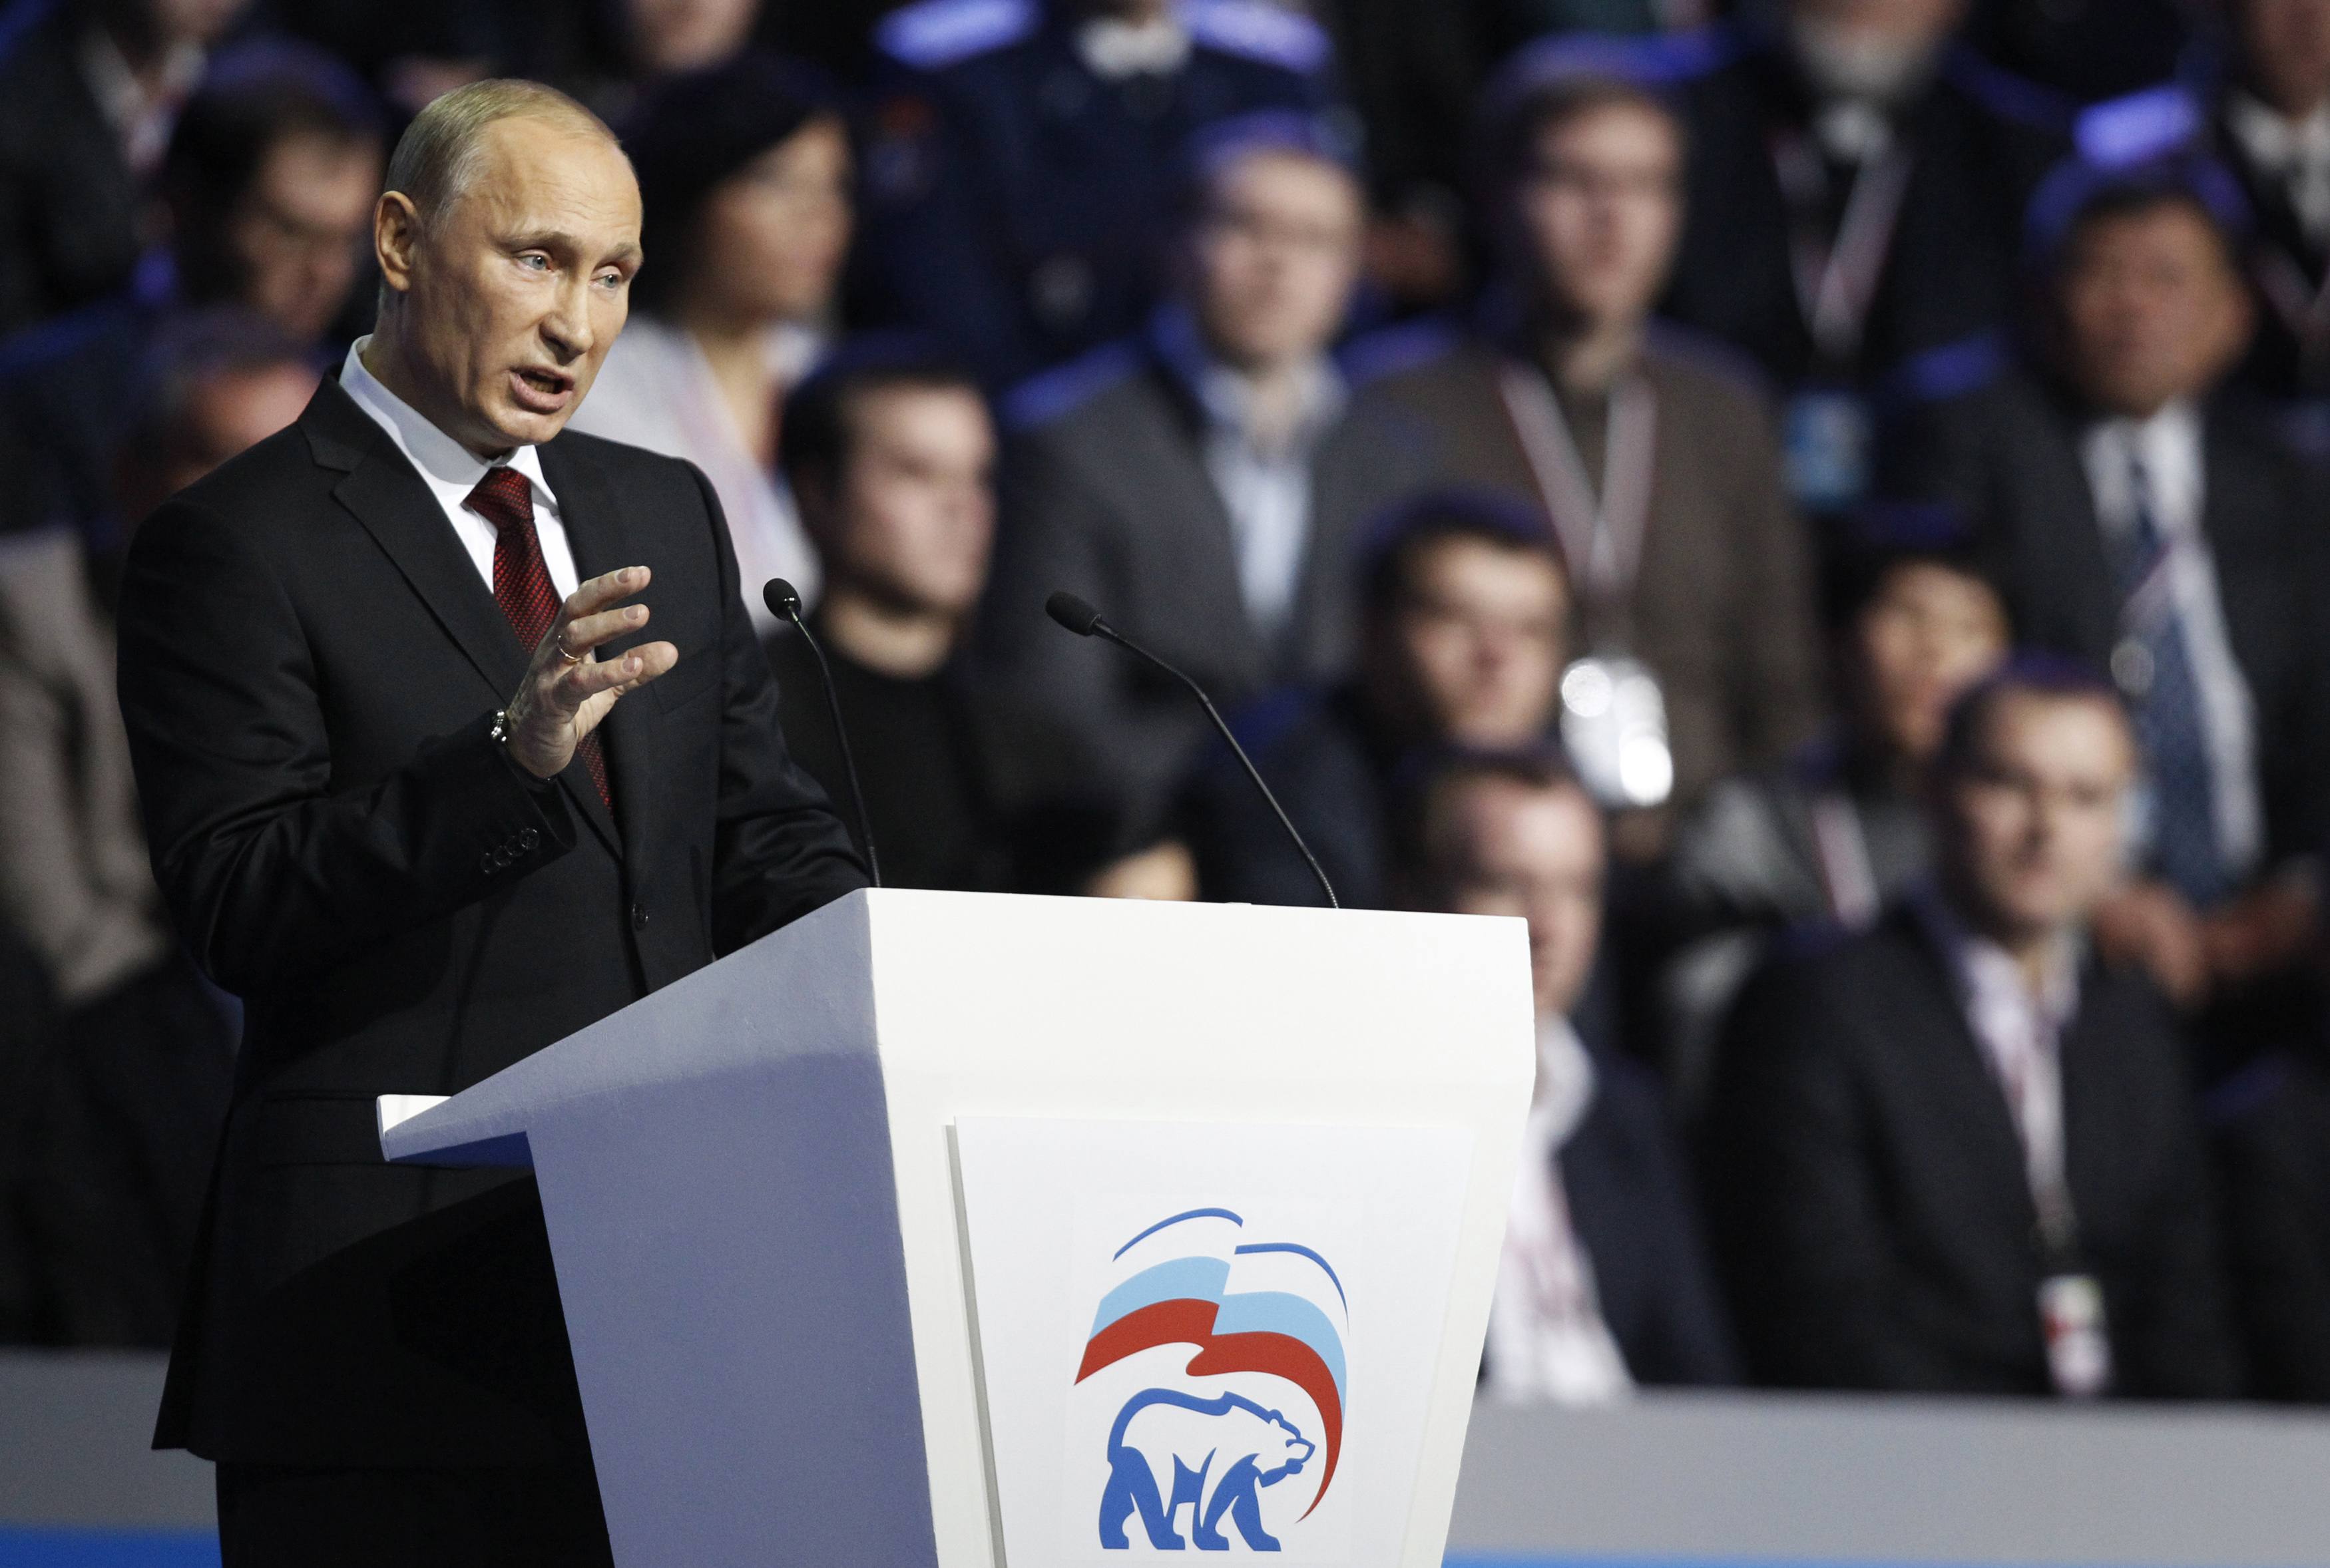 Το χρίσμα του υποψηφίου πήρε ο Βλαντιμίρ Πούτιν